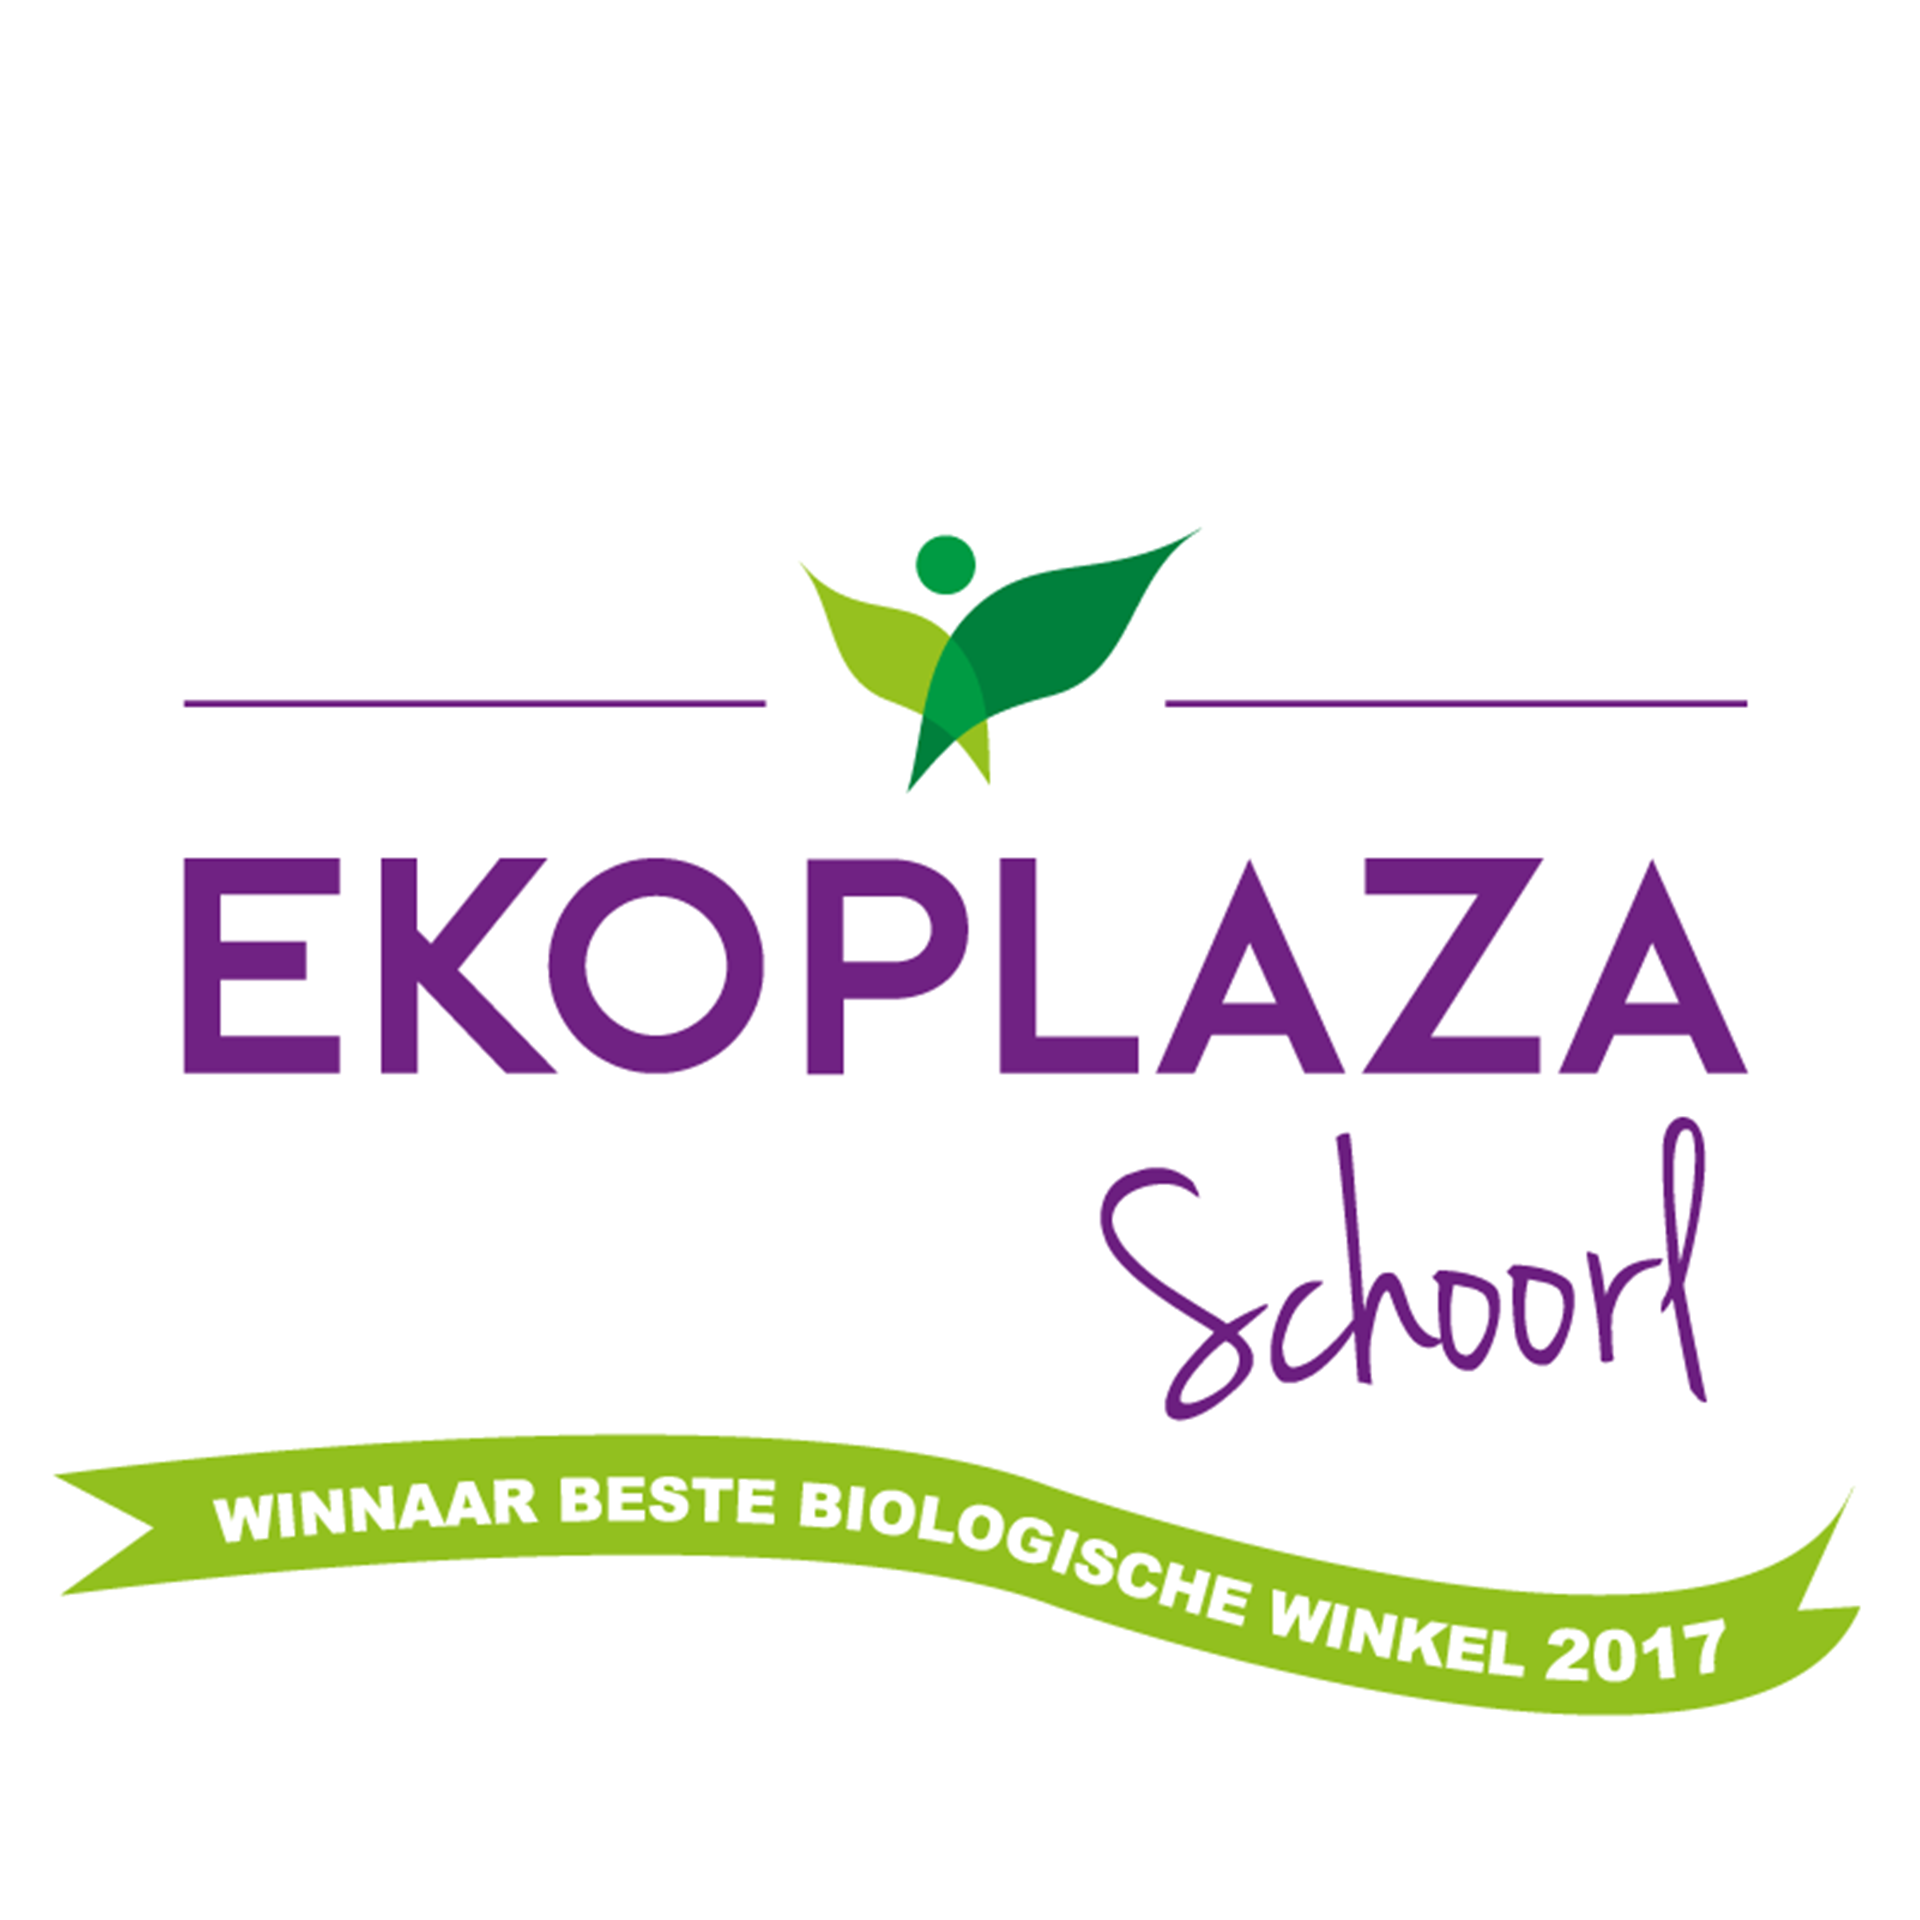 EkoPlaza Schoorl banner